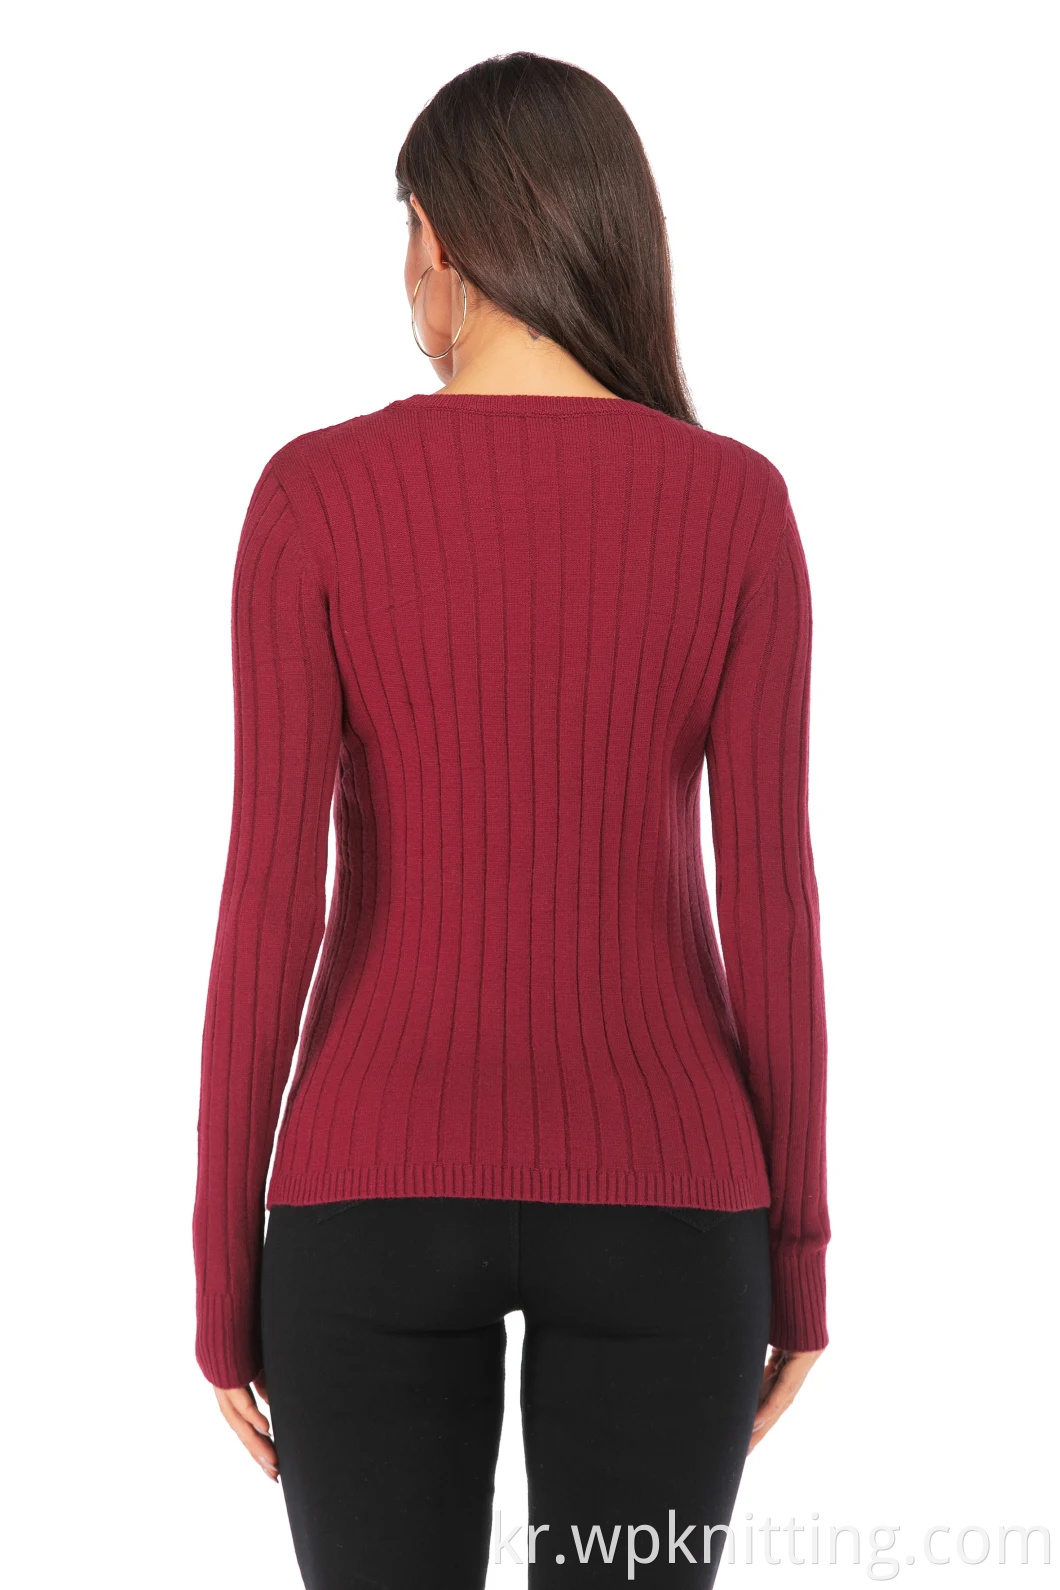 풀오버 니트웨어 바닥 셔츠 긴 소매 의류 패션 스웨터